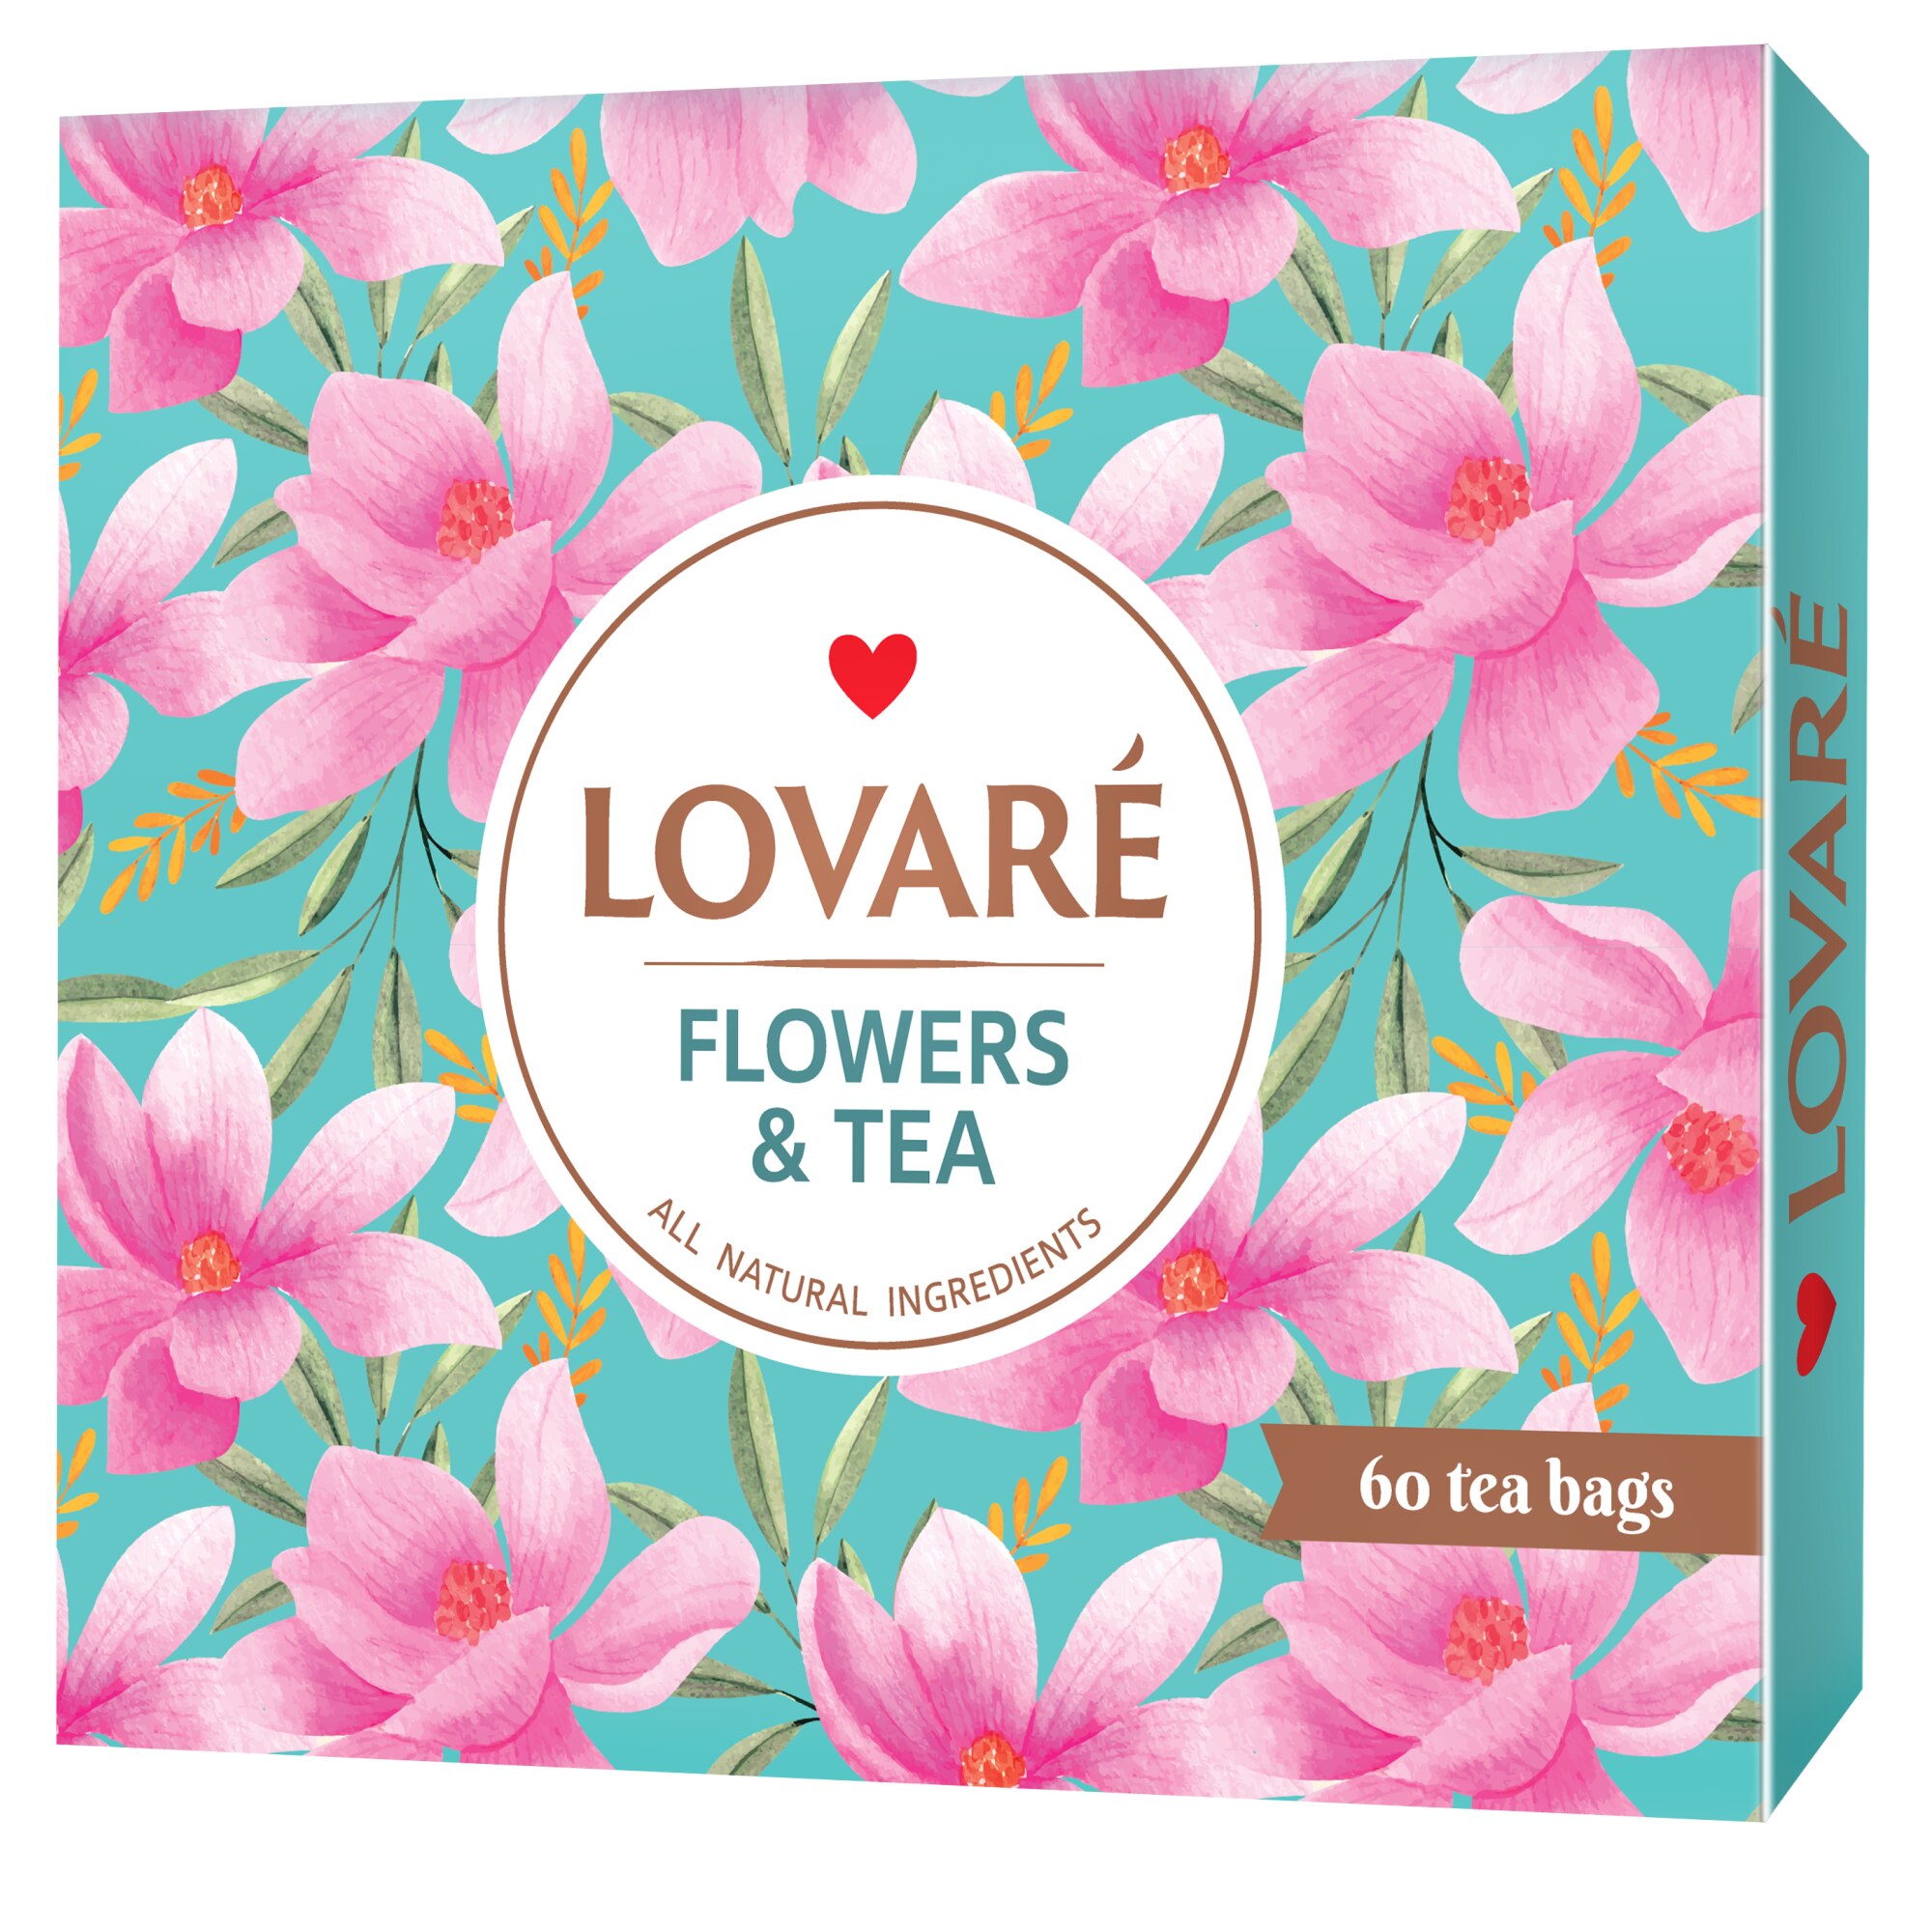 Ceai in asortiment 60 pliculete, 12 feluri a cate 5 pliculete fiecare, Set Tea Collection - Flowers & Tea, LOVARE, 103g